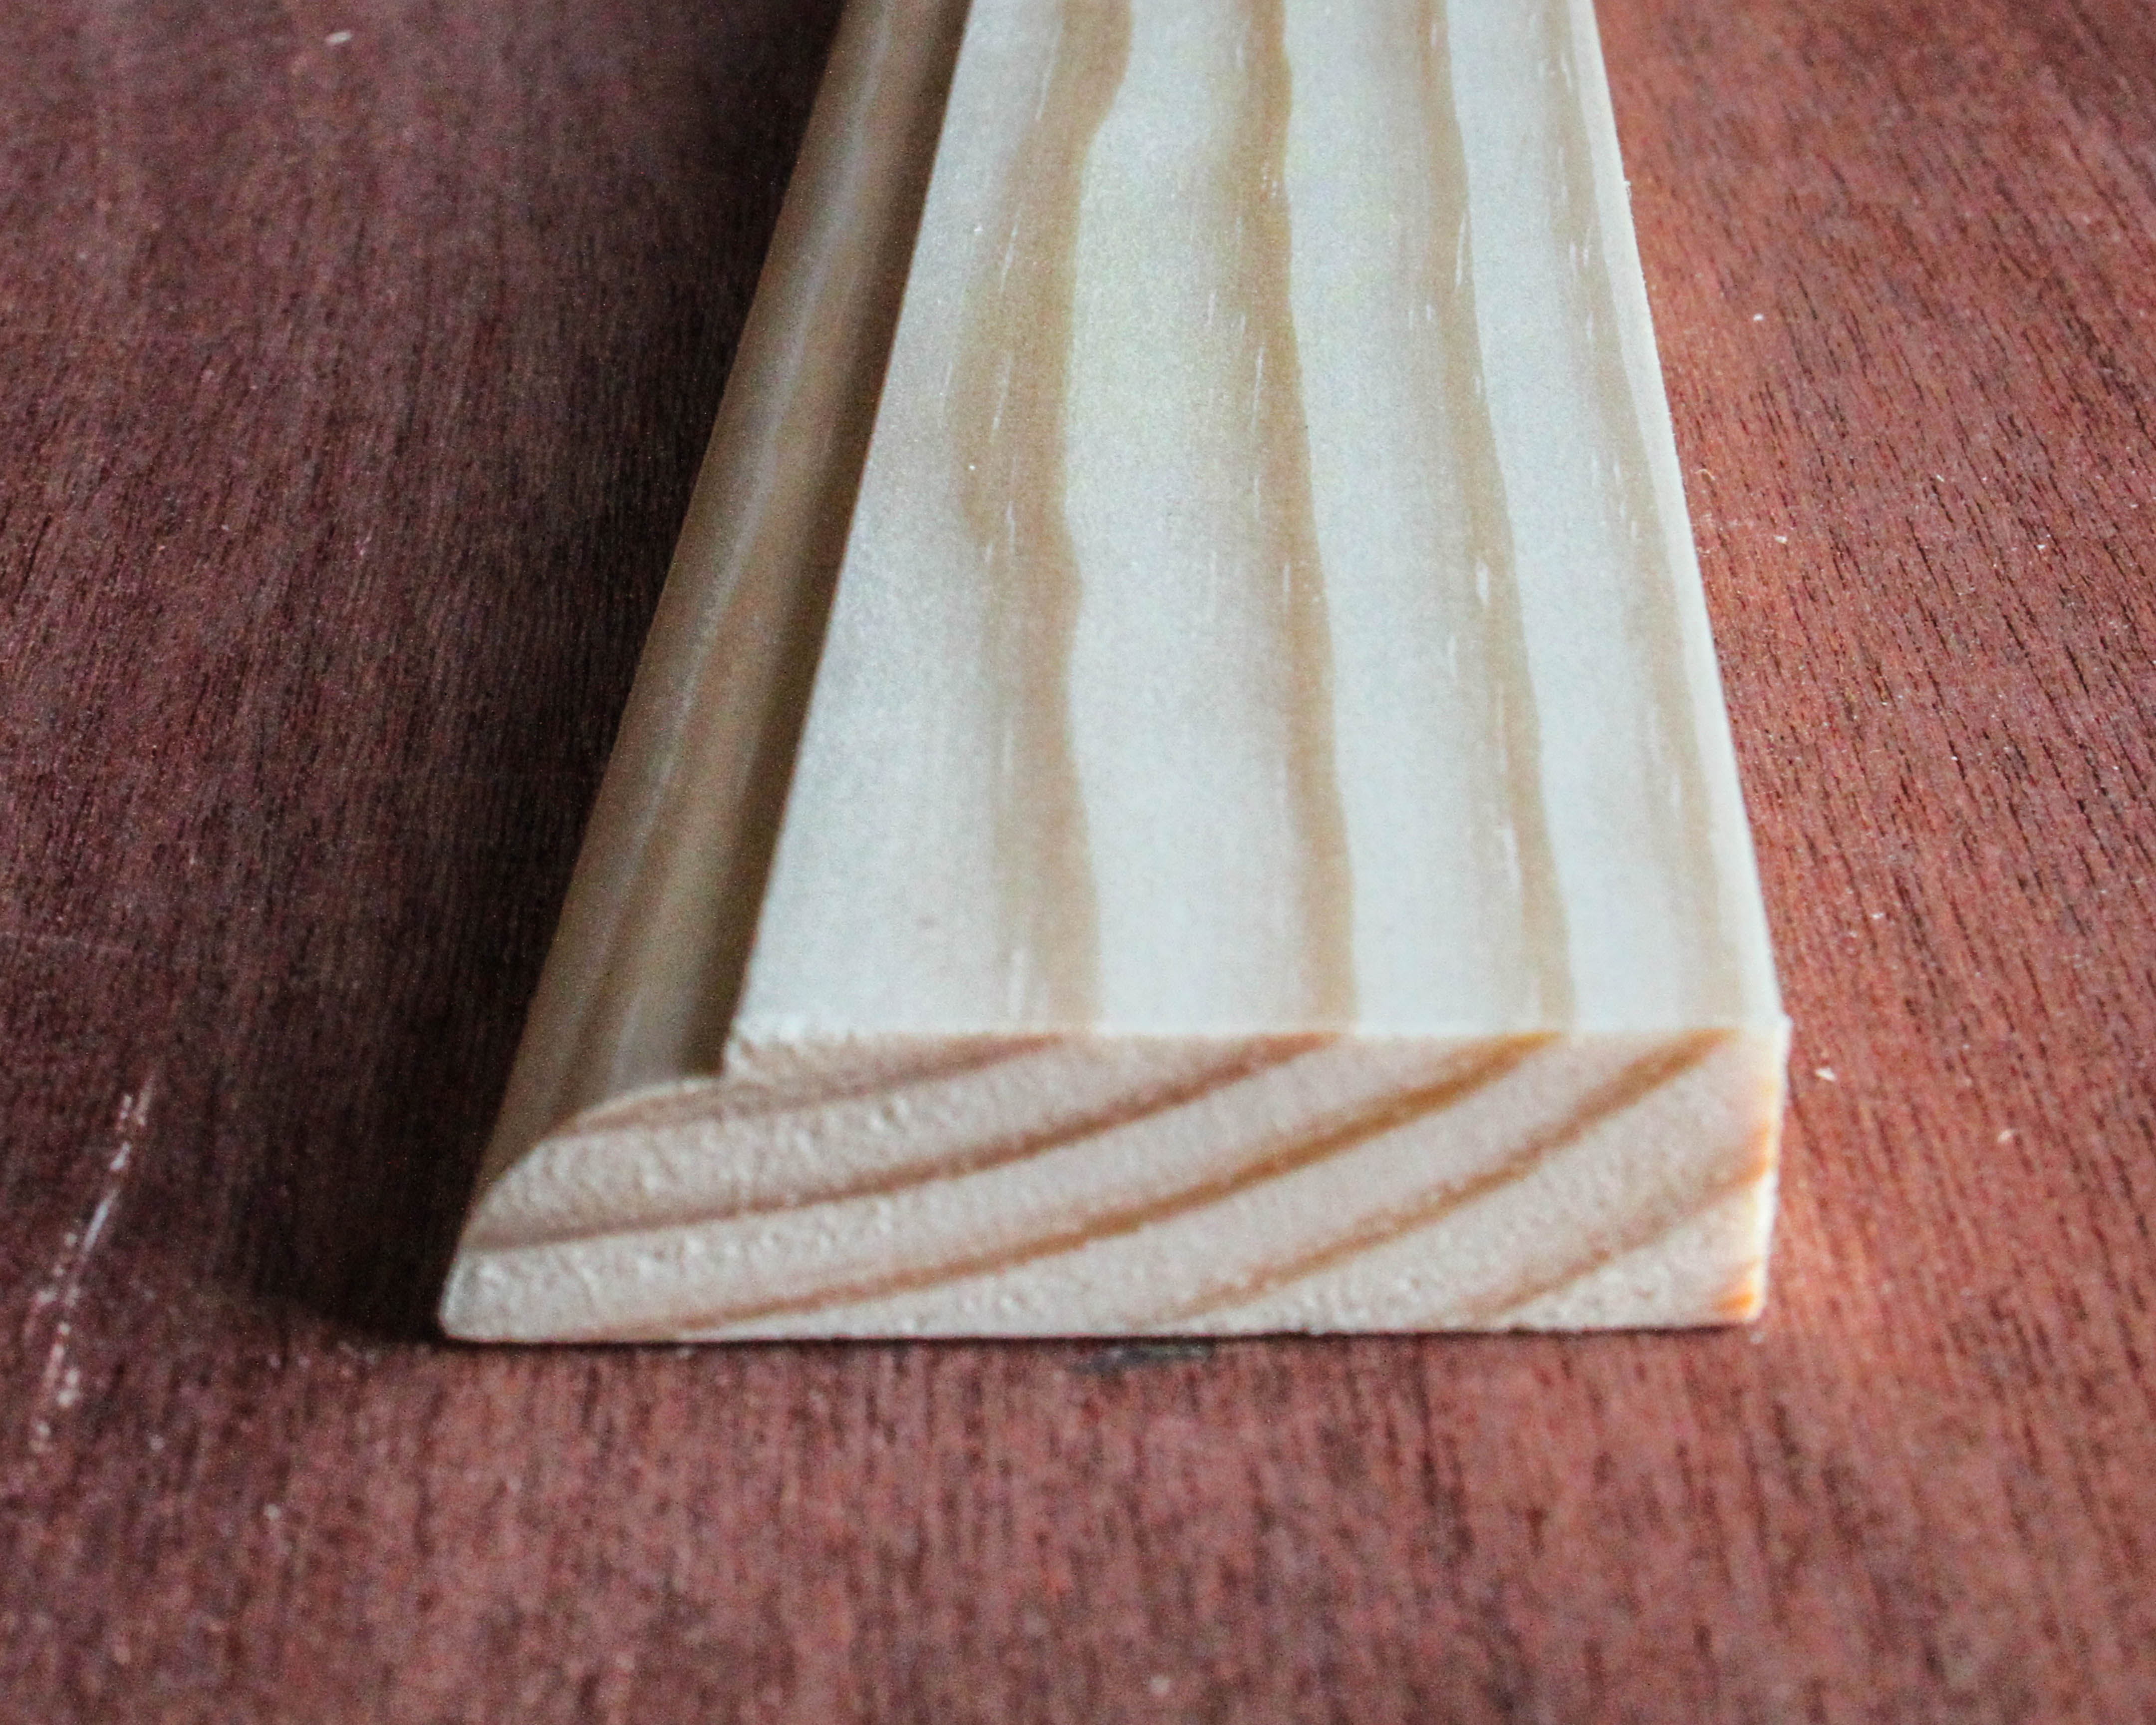  12 x 46mm Ovollo Door Stop Moulding  in premium grade clear Pine